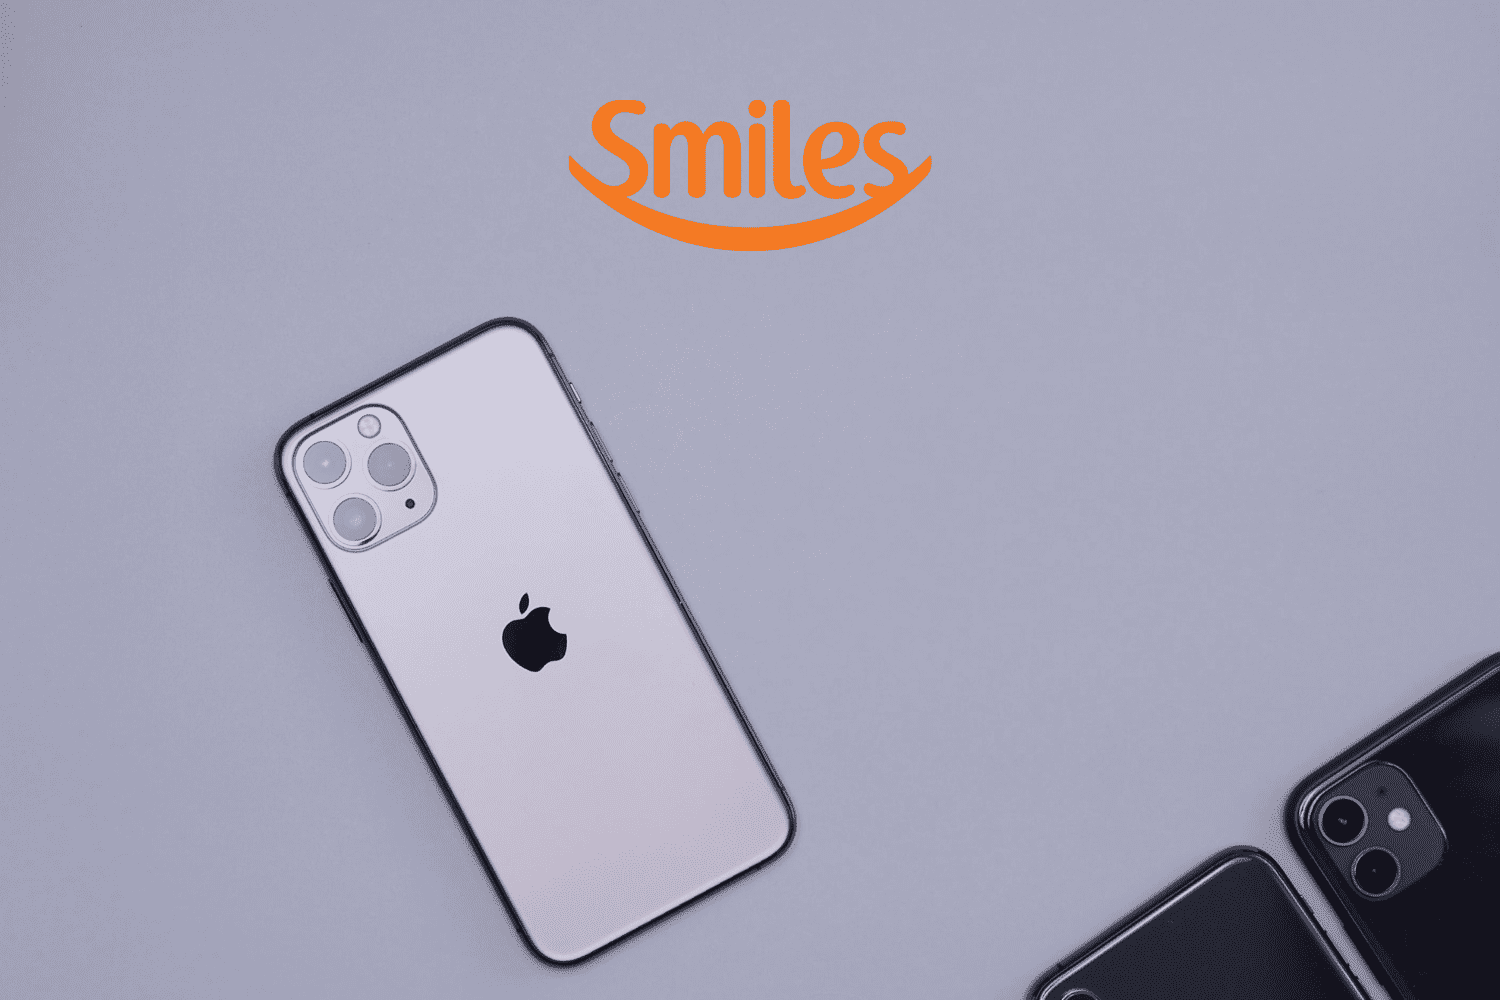 iphone branco com a logo Smiles